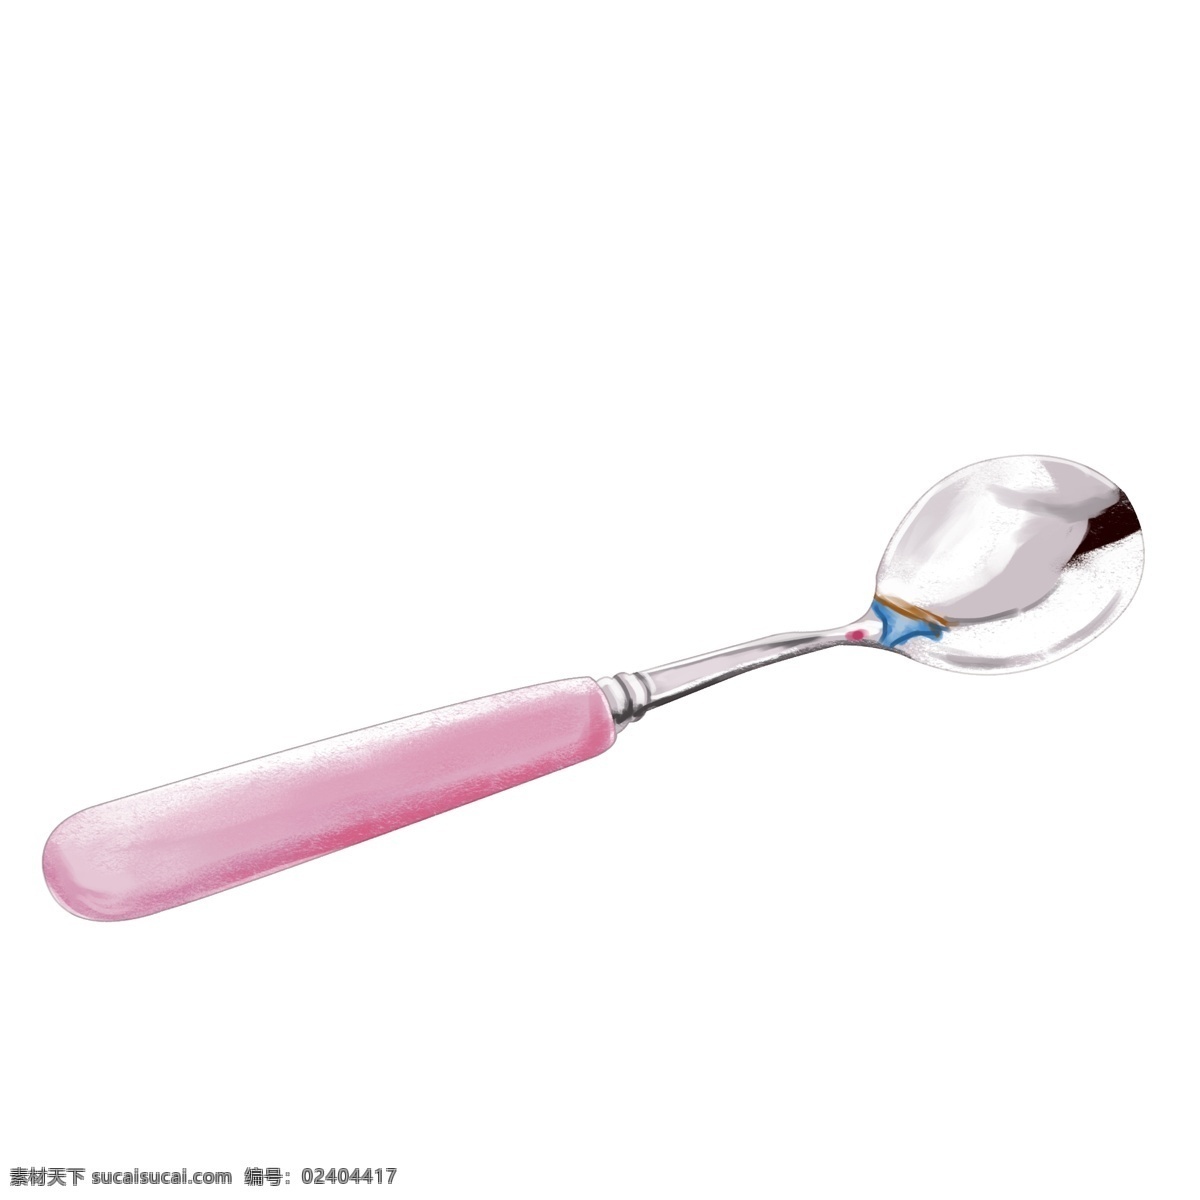 创意 粉色 金属 勺子 粉色勺子 产品 仿真 光滑 半圆 发光 实物 汤勺 餐具用品 银色 餐具